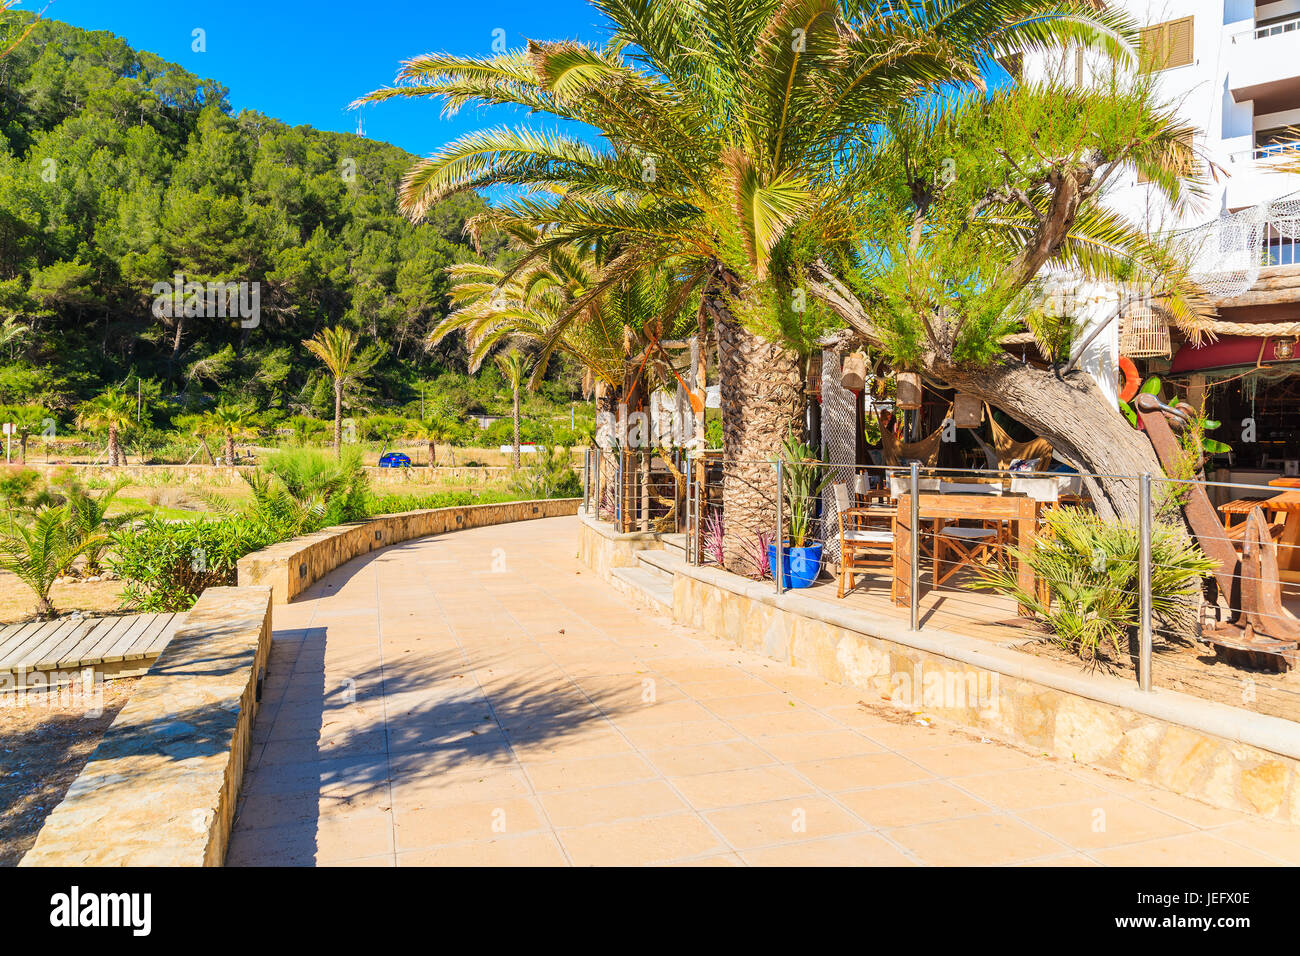 Palmiers sur la promenade le long du littoral de sable de Cala San Vicente bay aux beaux jours de l'été, l'île d'Ibiza, Espagne Banque D'Images